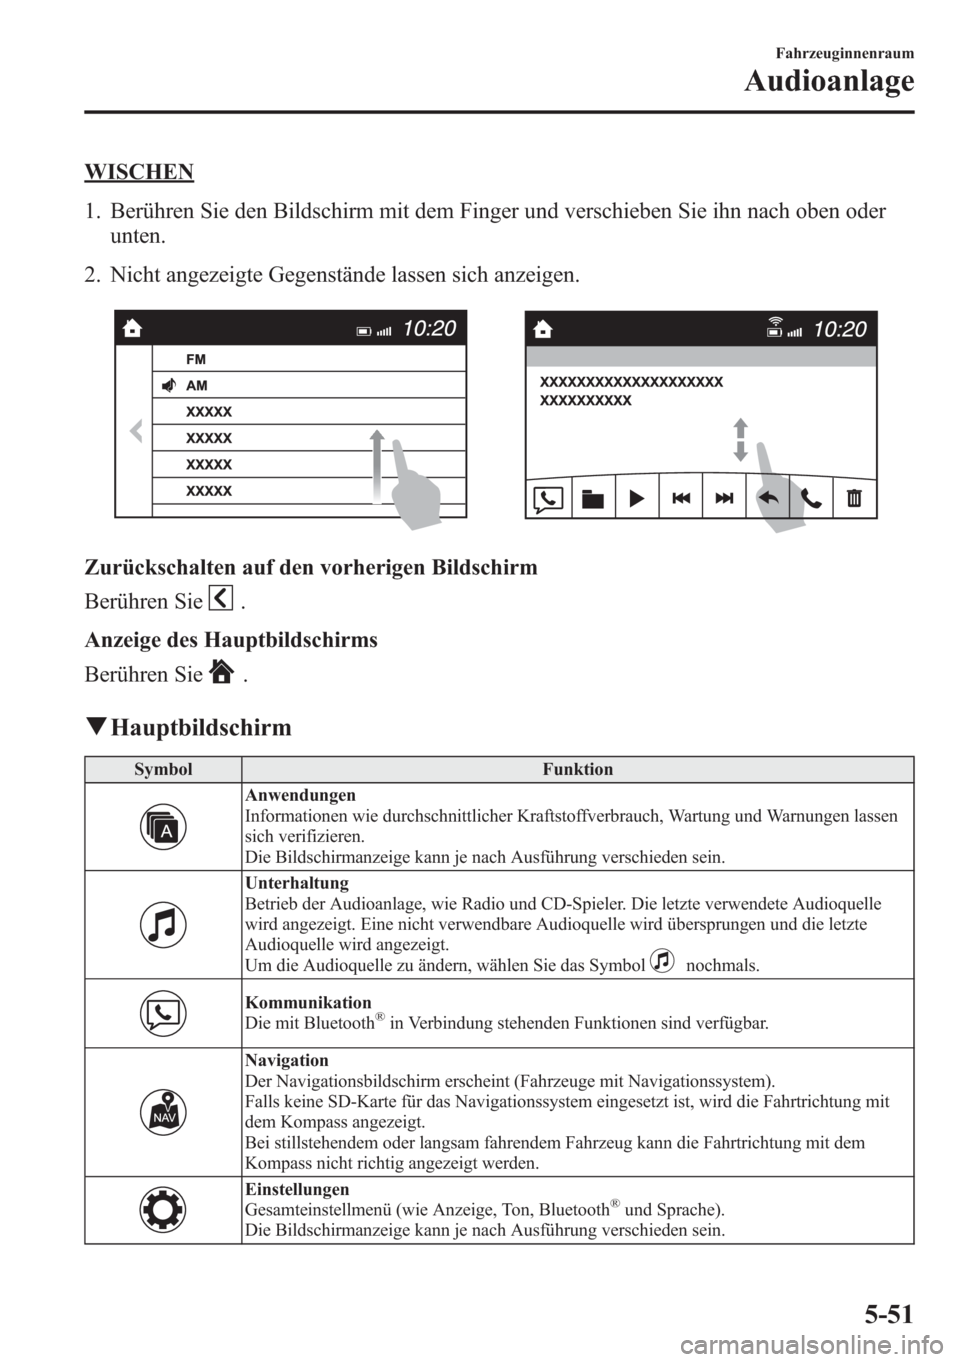 MAZDA MODEL 6 2015  Betriebsanleitung (in German) WISCHEN
1. Berühren Sie den Bildschirm mit dem Finger und verschieben Sie ihn nach oben oder
unten.
2. Nicht angezeigte Gegenstände lassen sich anzeigen.
Zurückschalten auf den vorherigen Bildschir